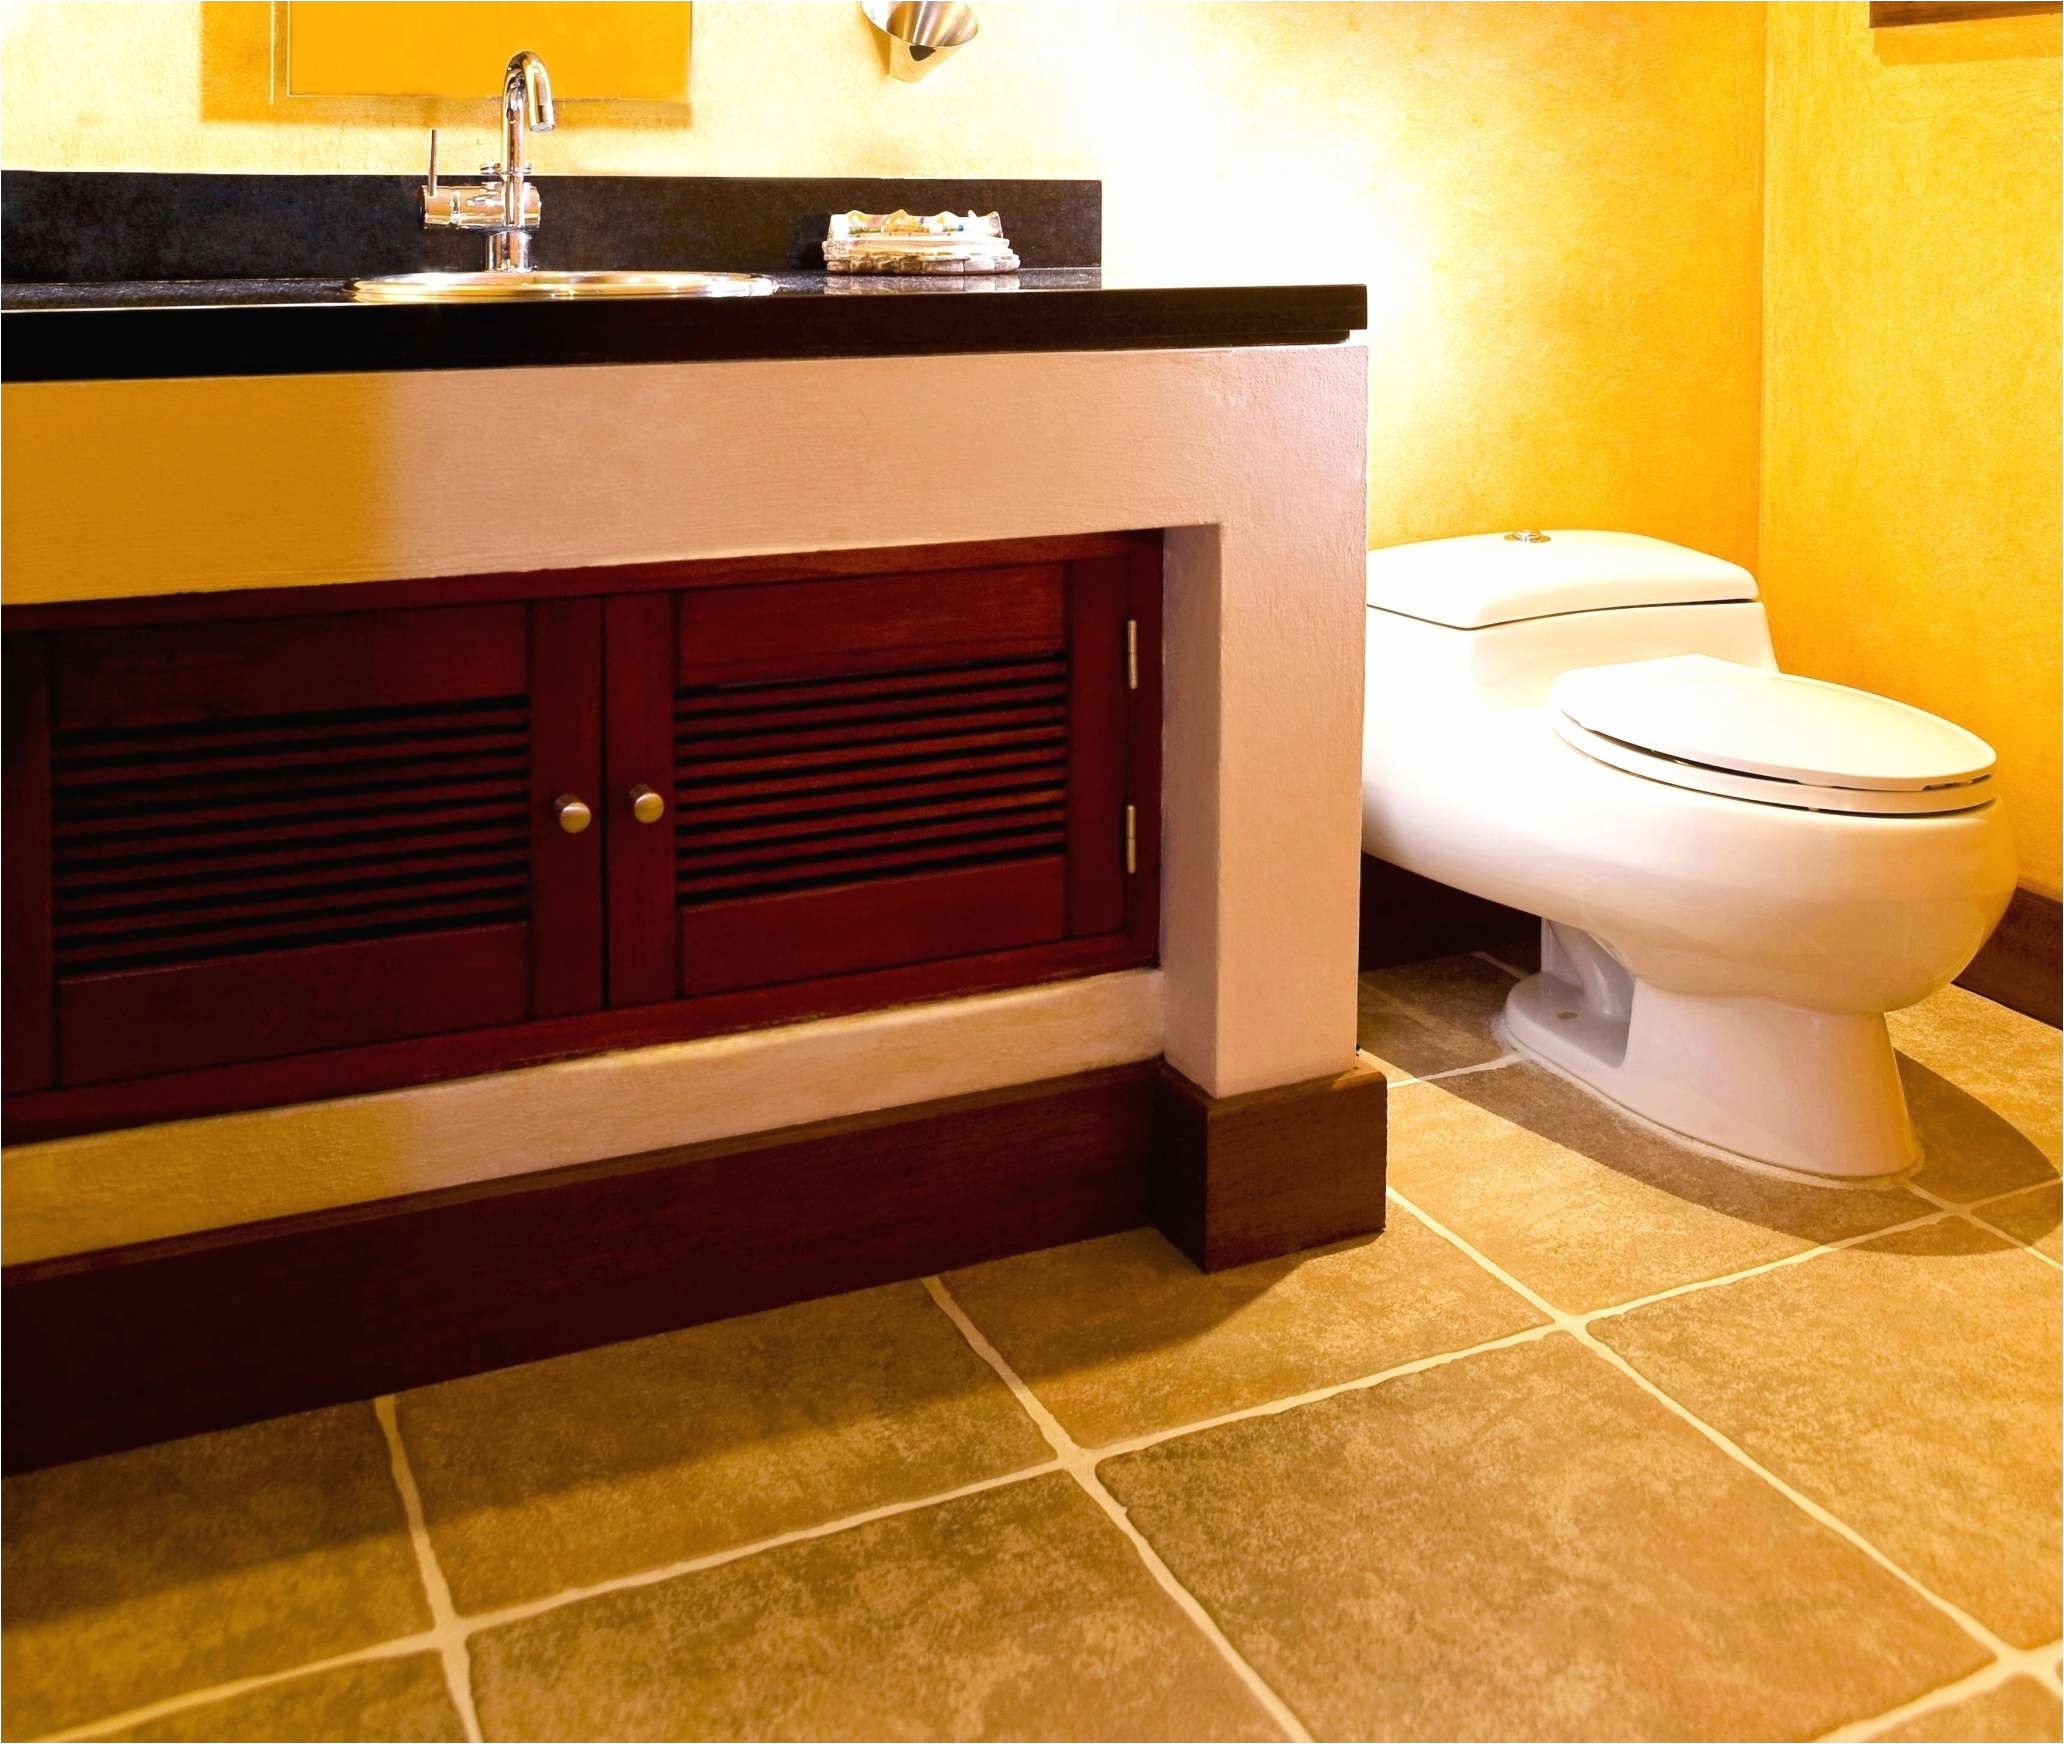 Bathroom Floor Tile Design Ideas Inspirationa Porcelain Flooring Ideas Floor Tiles Mosaic Bathroom 0d New Bathroom